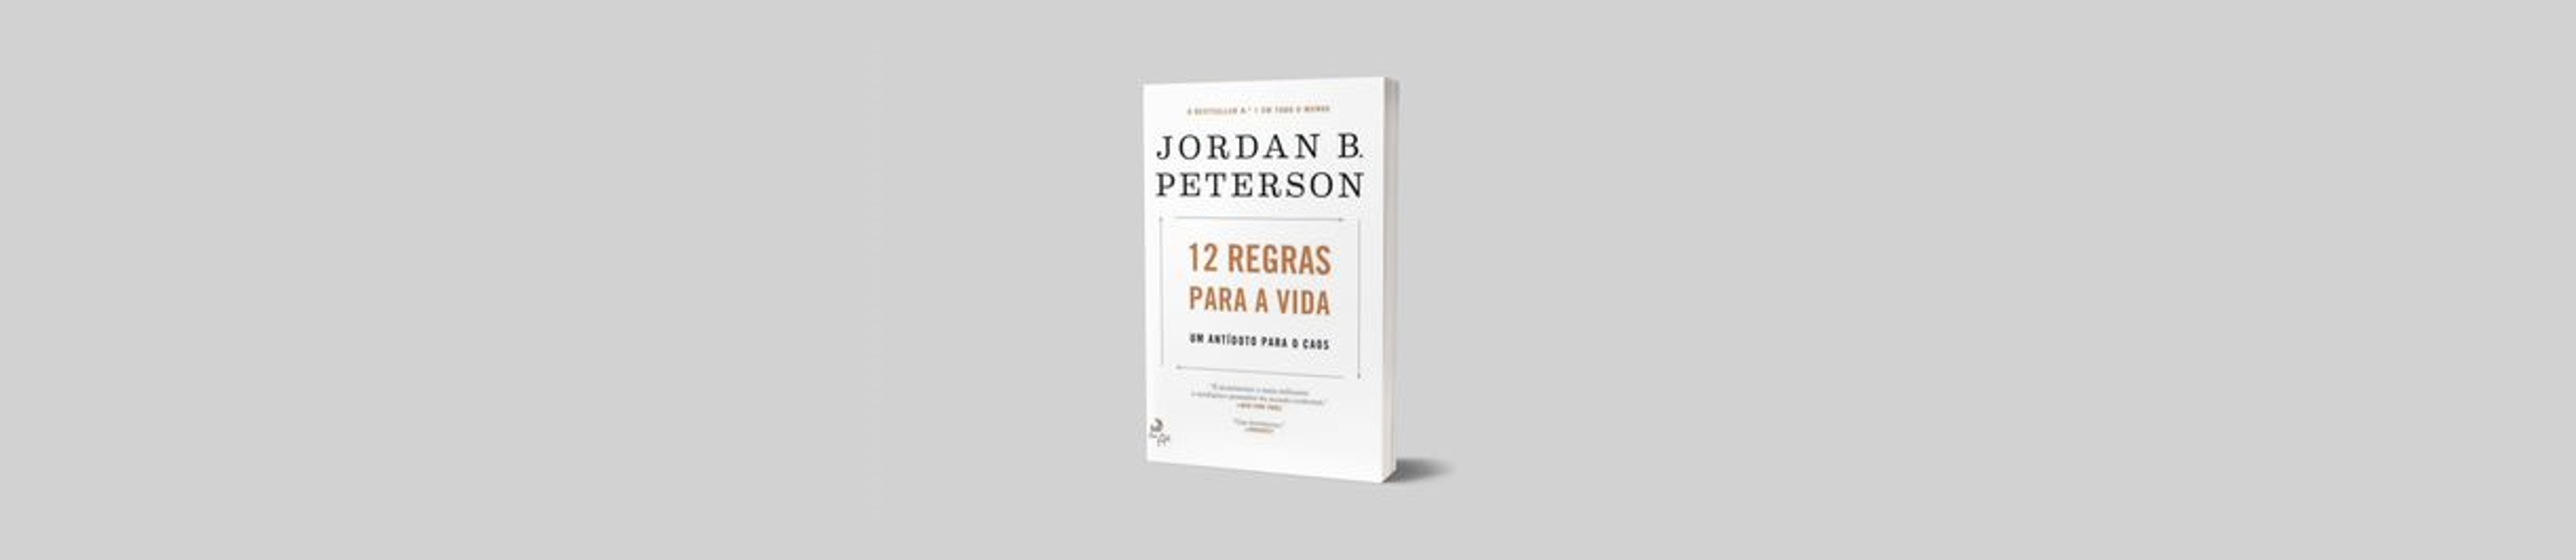 Resumo do Livro: 12 Regras para a Vida de Jordan B. Peterson